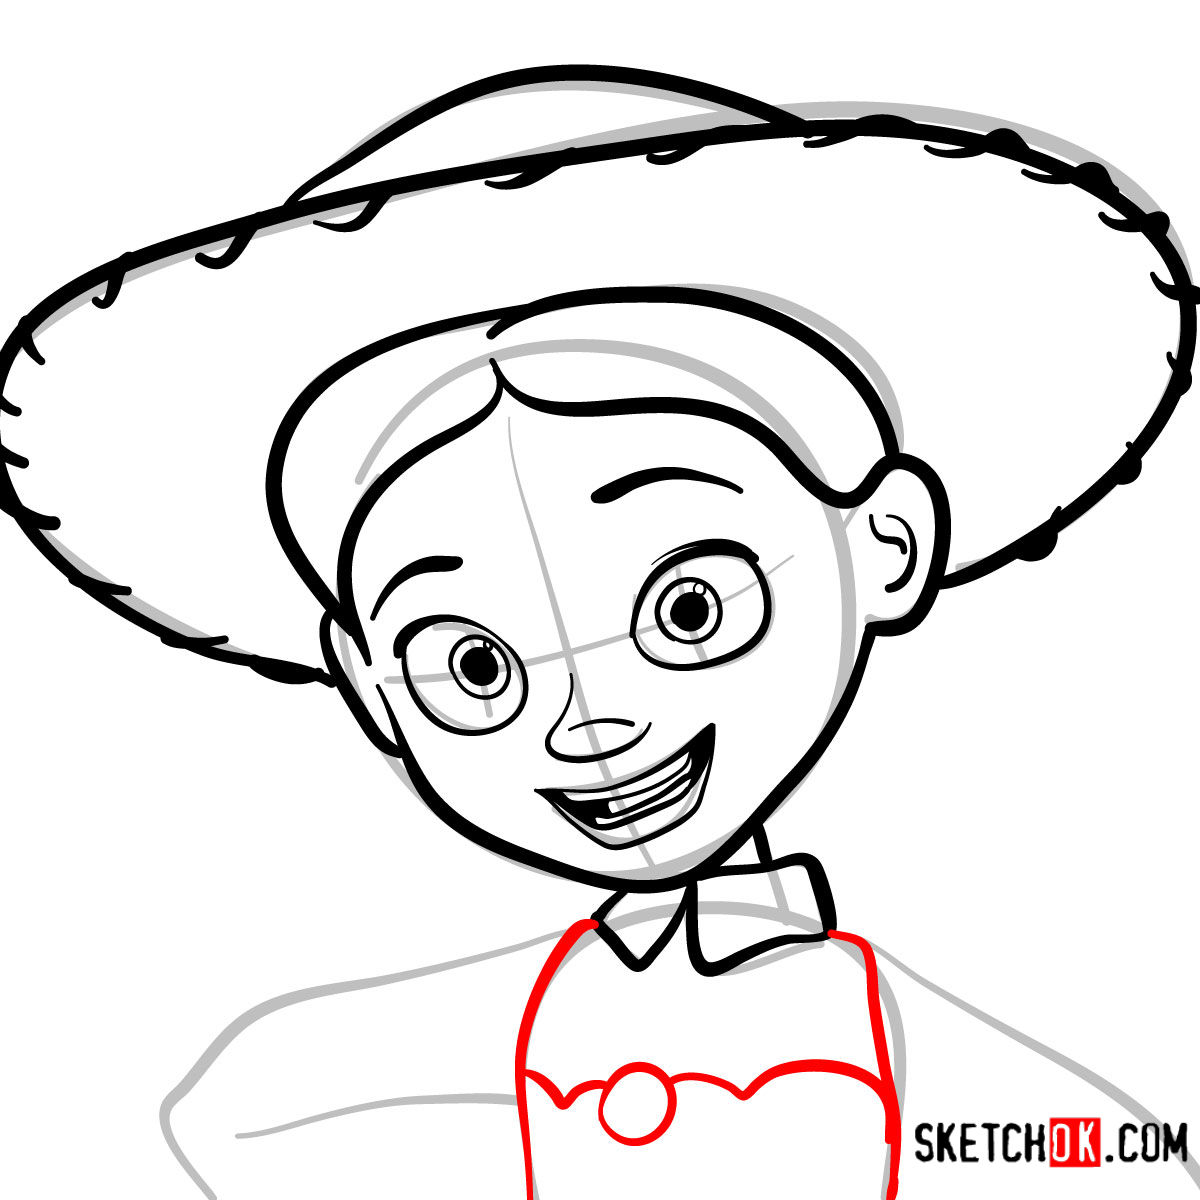 How to draw a portrait of Jessie | Toy Story - step 07